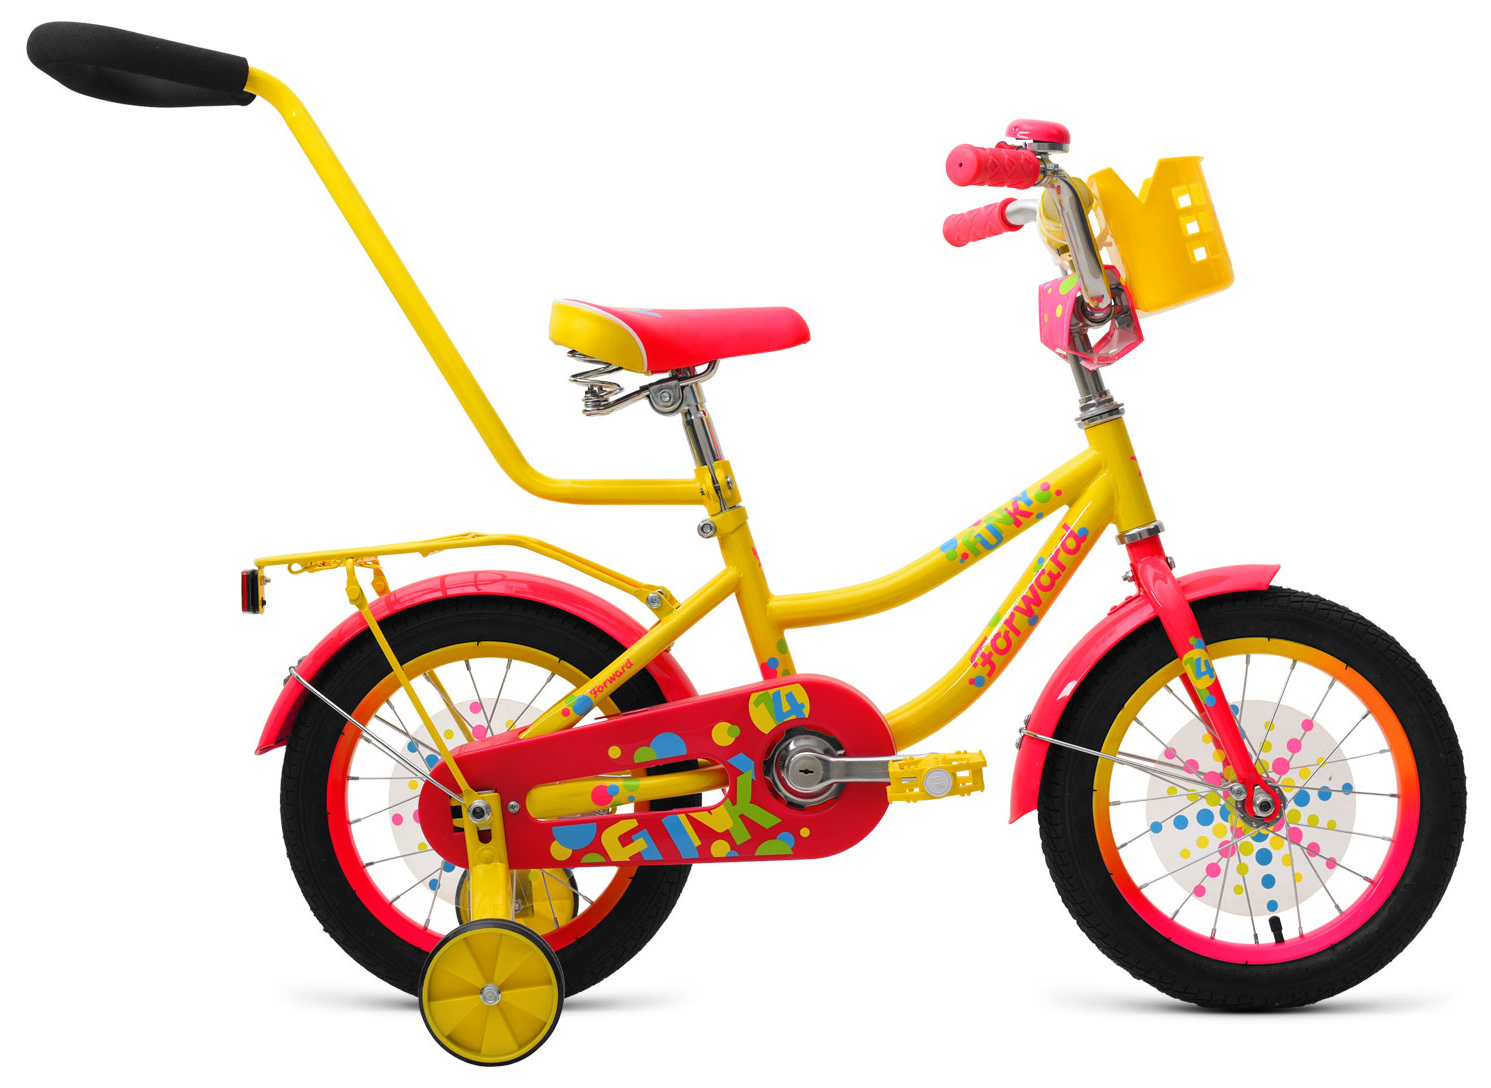  Отзывы о Трехколесный детский велосипед Forward Funky 14 2019